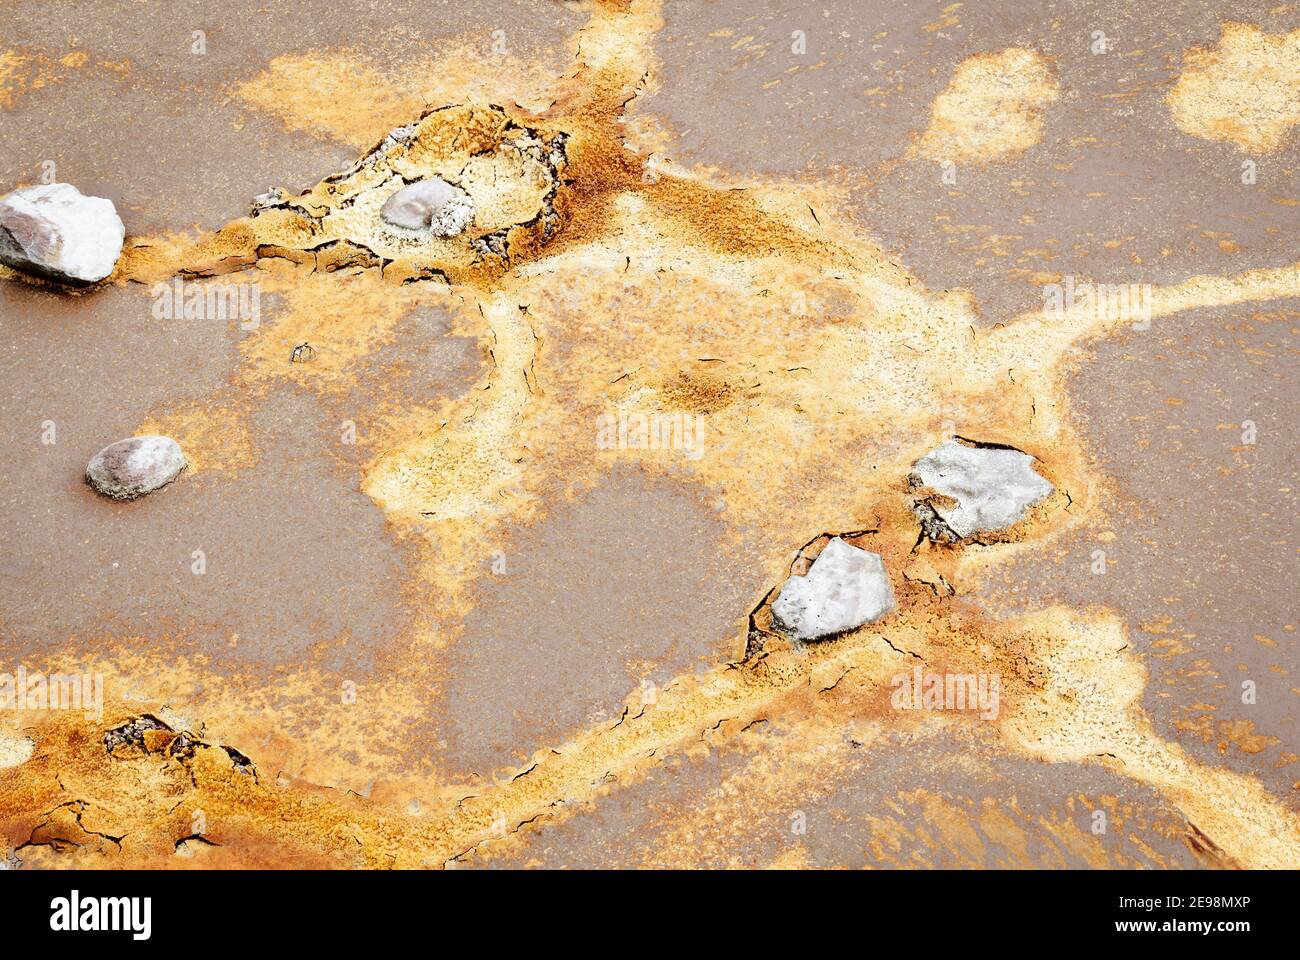 Abstrakte Texturen und Formationen am Ufer des Rio Tinto Flusses, Andalusien Spanien. Schattierungen von Rot und Orange, Eisen und andere Mineralien im Wasser. Stockfoto